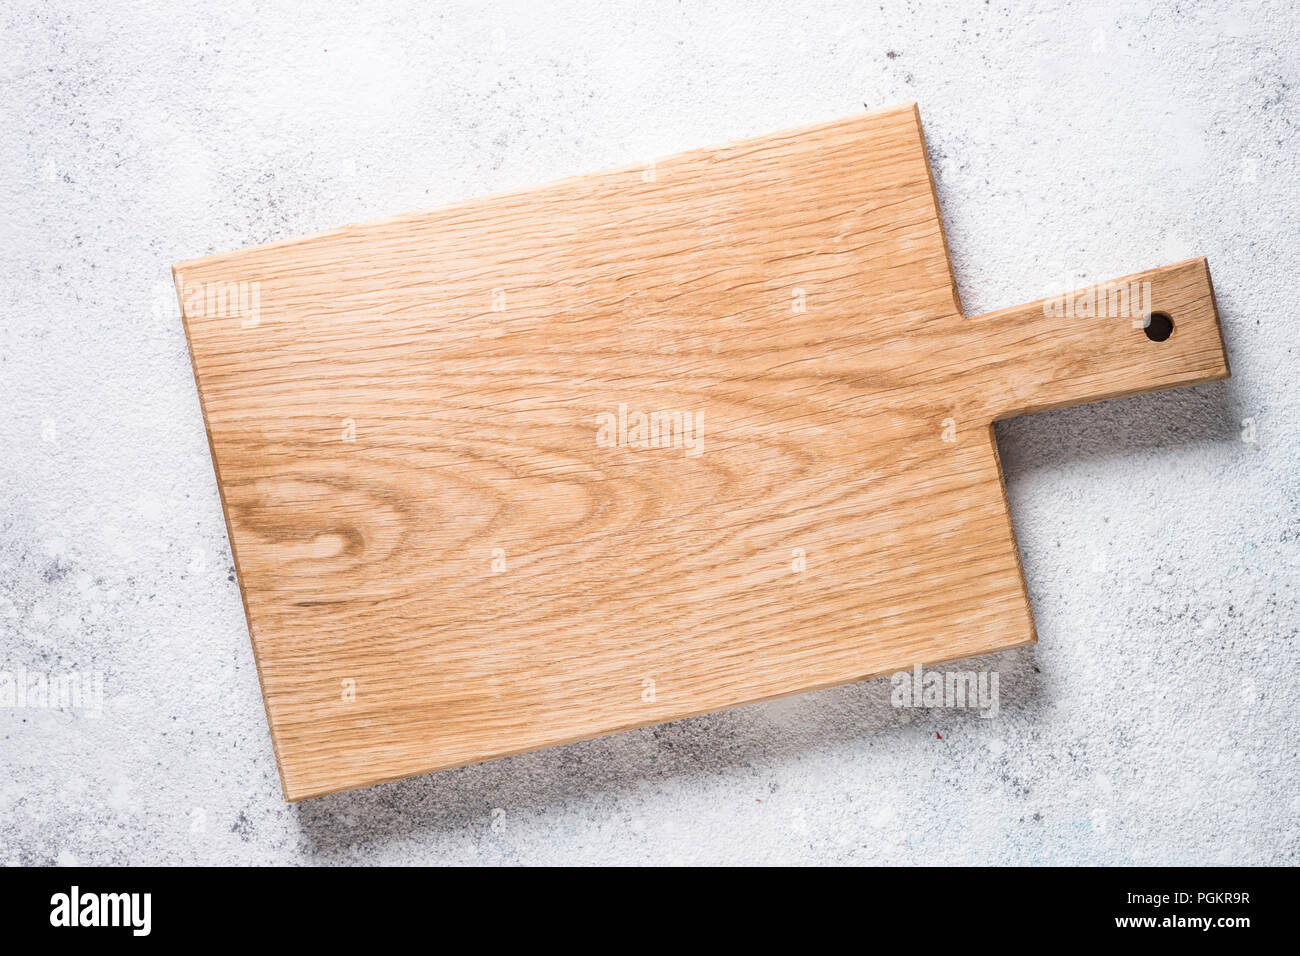 Leere Holz Schneidebrett am weißen Stein Stockfotografie - Alamy